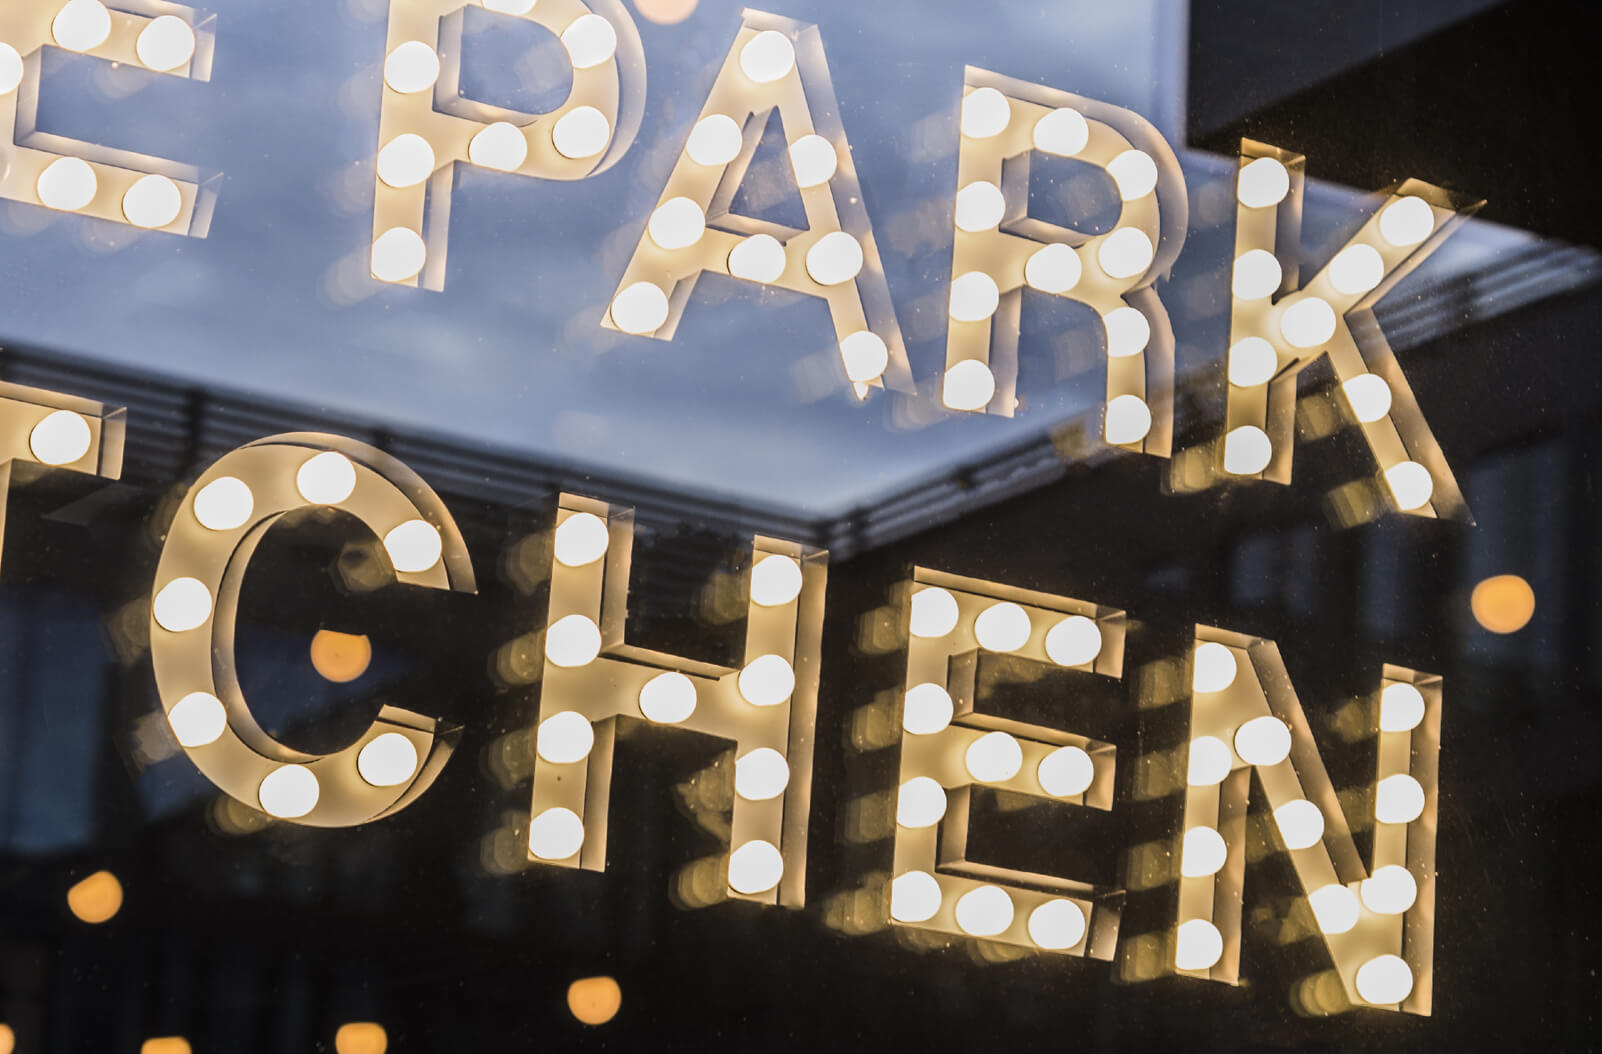 Le Parc Cuisine - La cuisine du parc - petites lettres avec ampoules derrière le verre